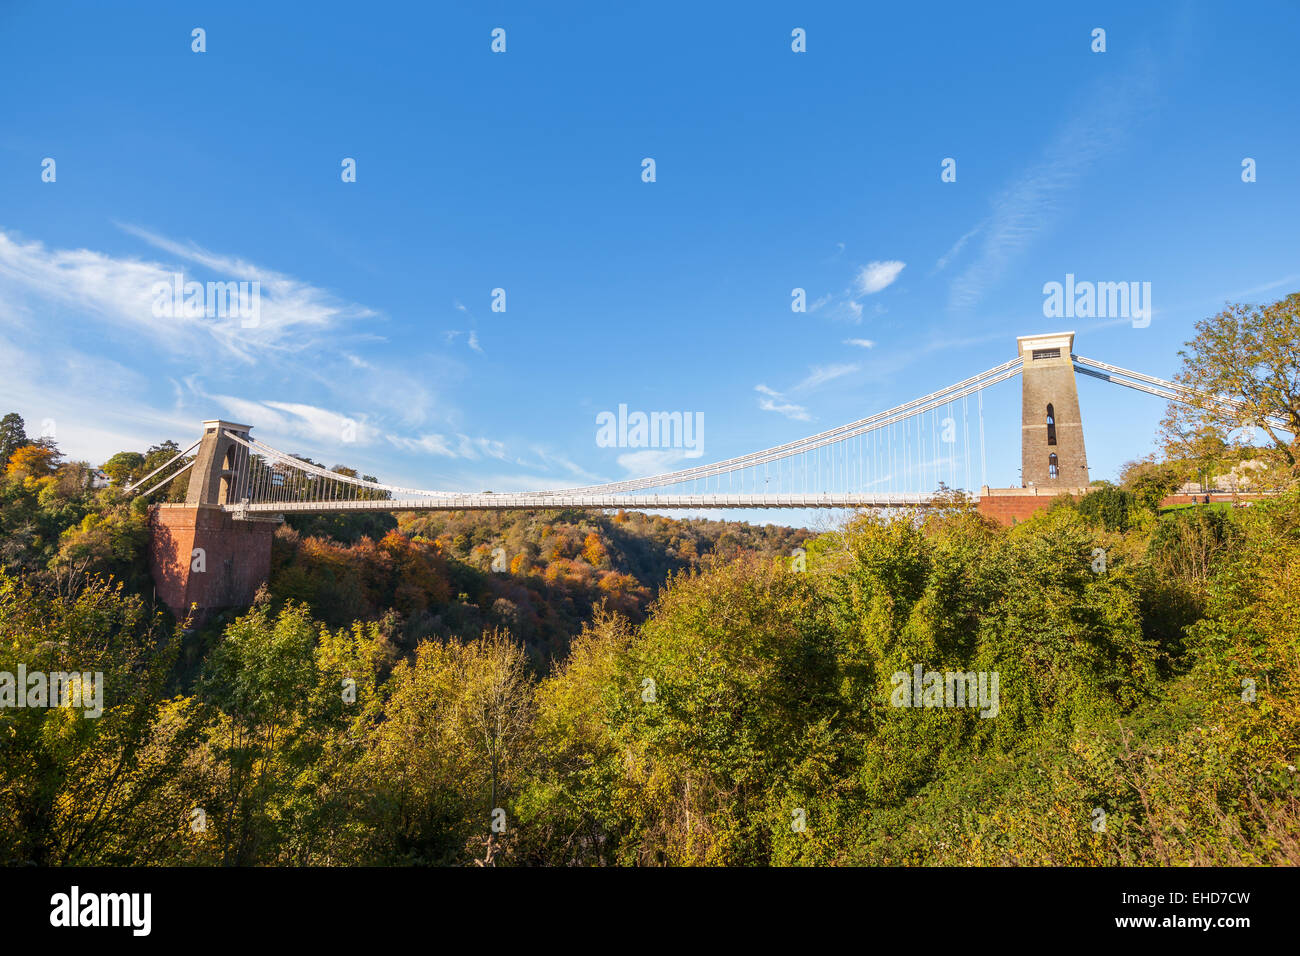 Aperçu de l'ensemble pont suspendu de Clifton à Bristol, Angleterre, Royaume-Uni Banque D'Images